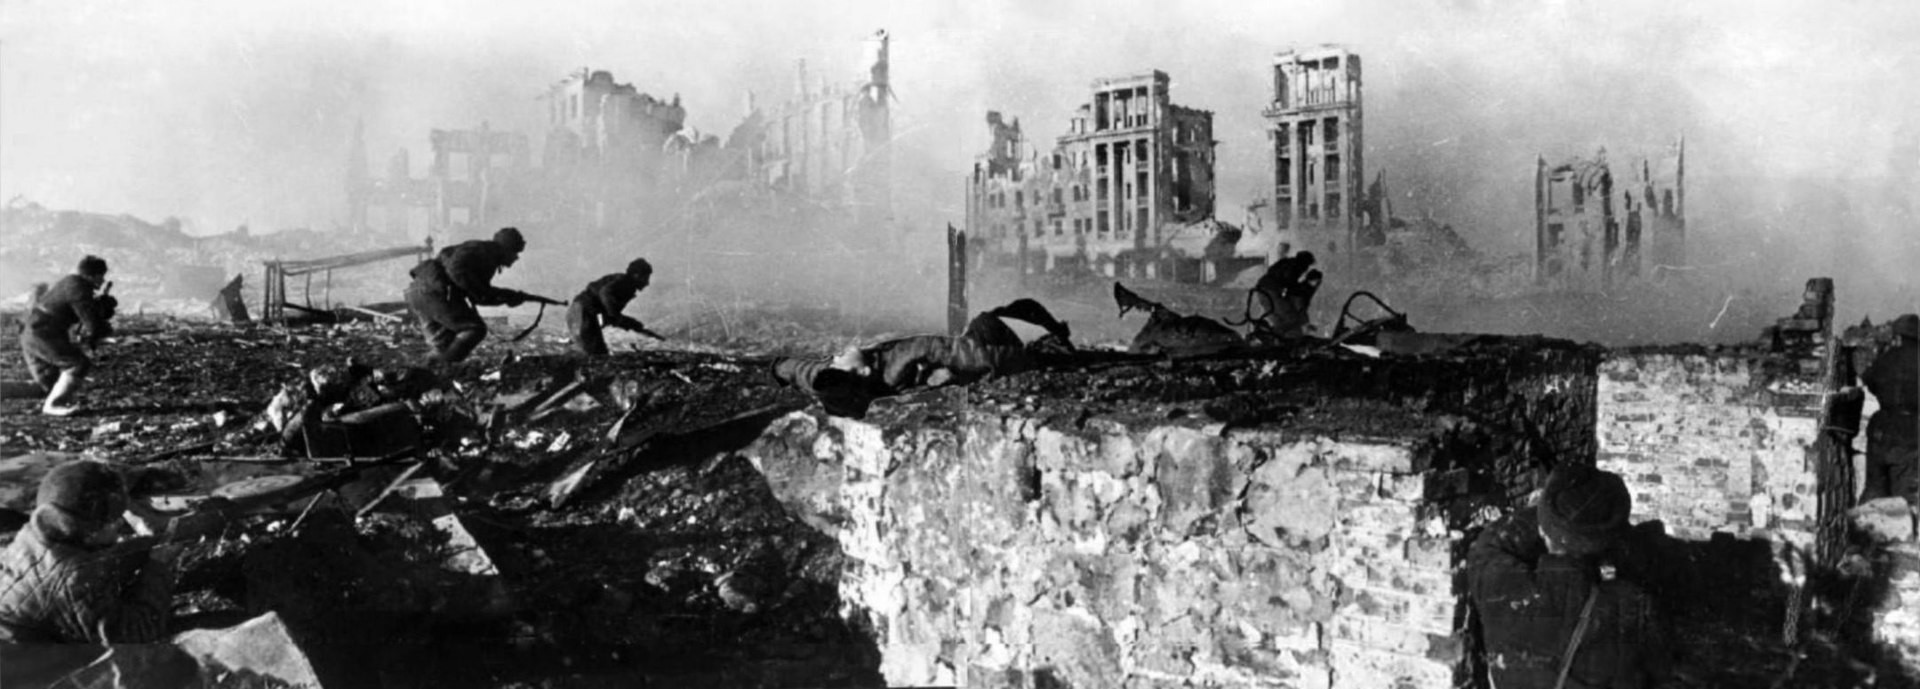 Sovjetski napad na zgradbo v Stalingradu, februar 1943